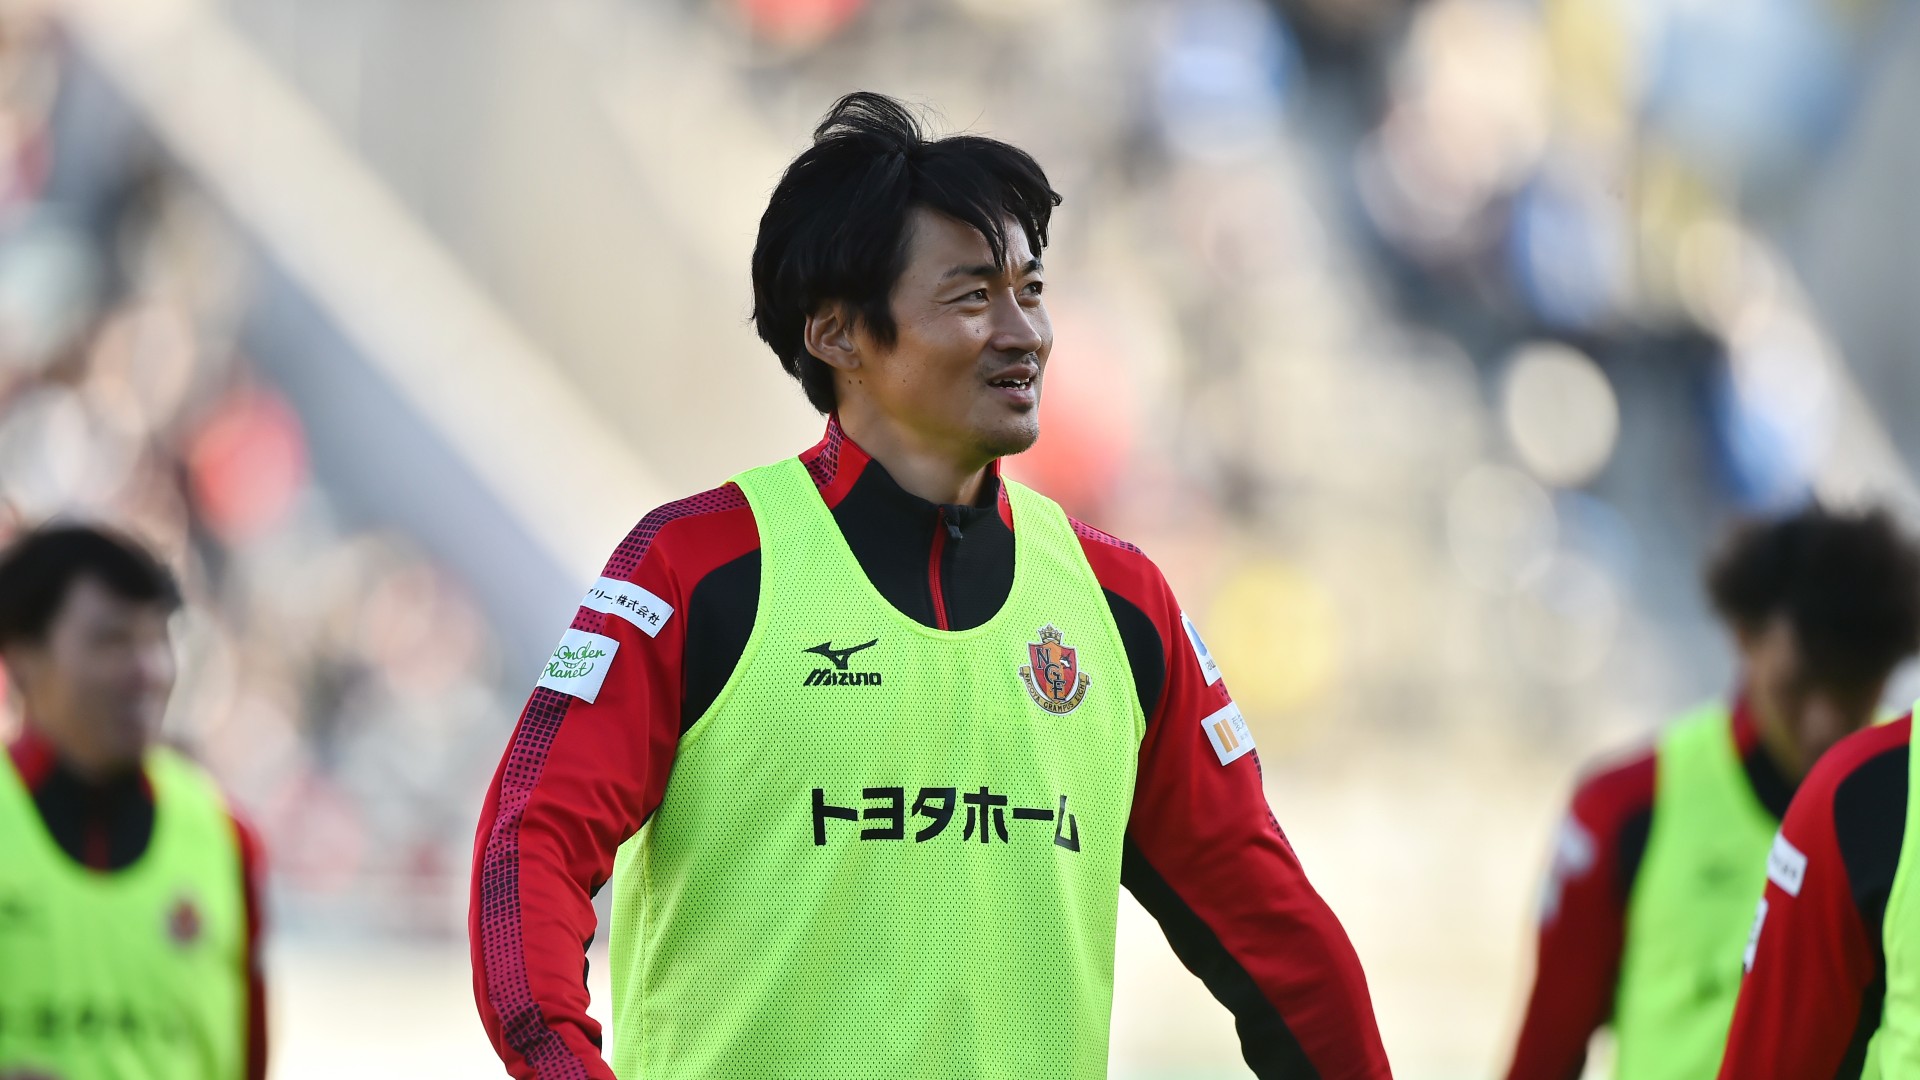 名古屋df千葉和彦 プロサッカー選手としての扉を開いていただいた 新潟へ完全移籍 Goal Com